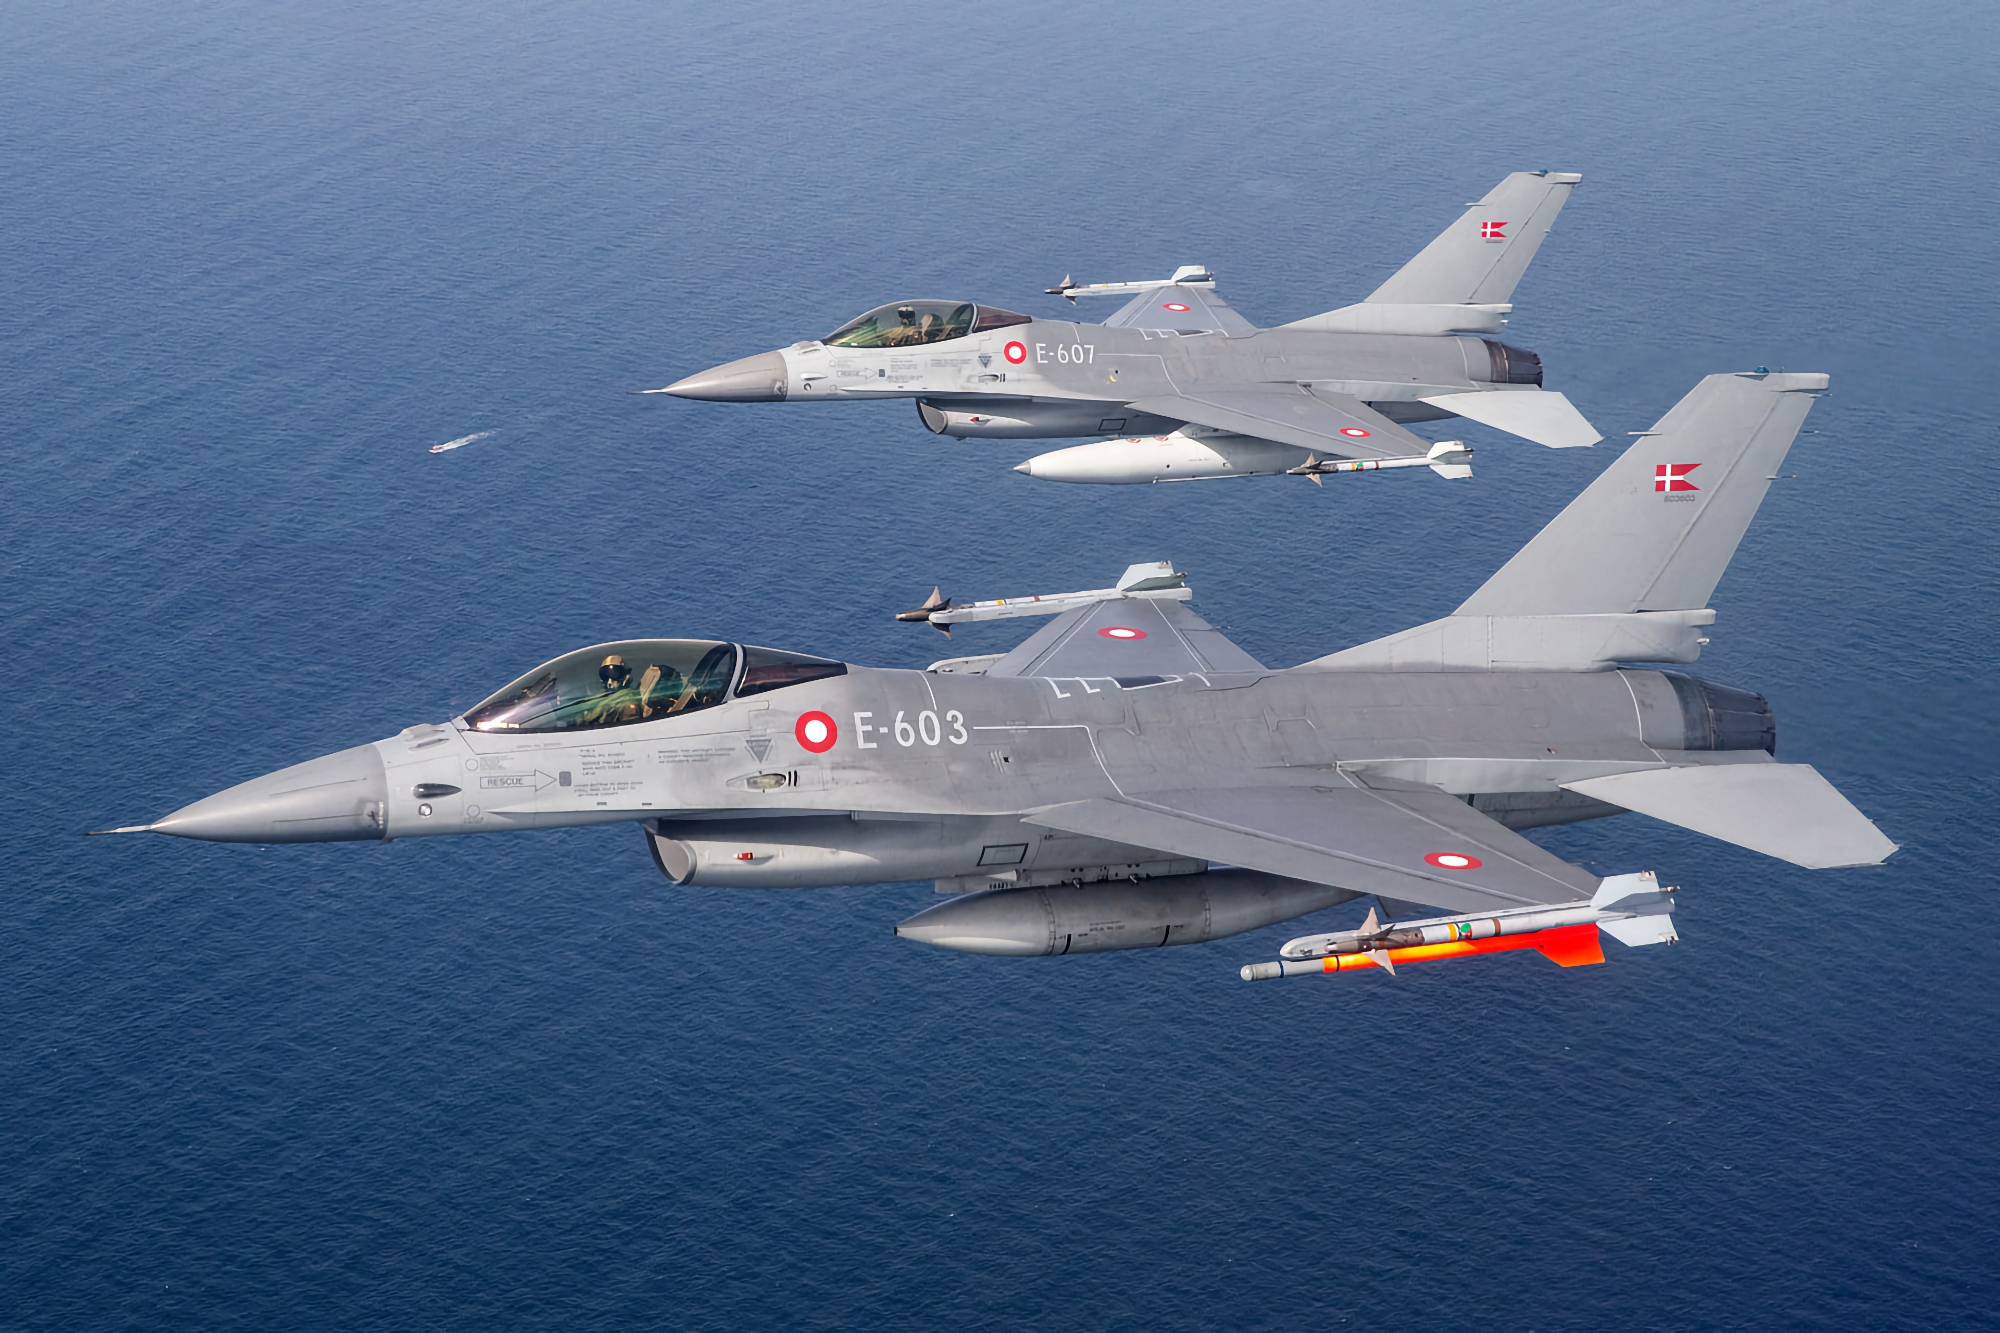 Le Danemark indique quand il transférera ses premiers chasseurs F-16 Fighting Falcon à l'Ukraine